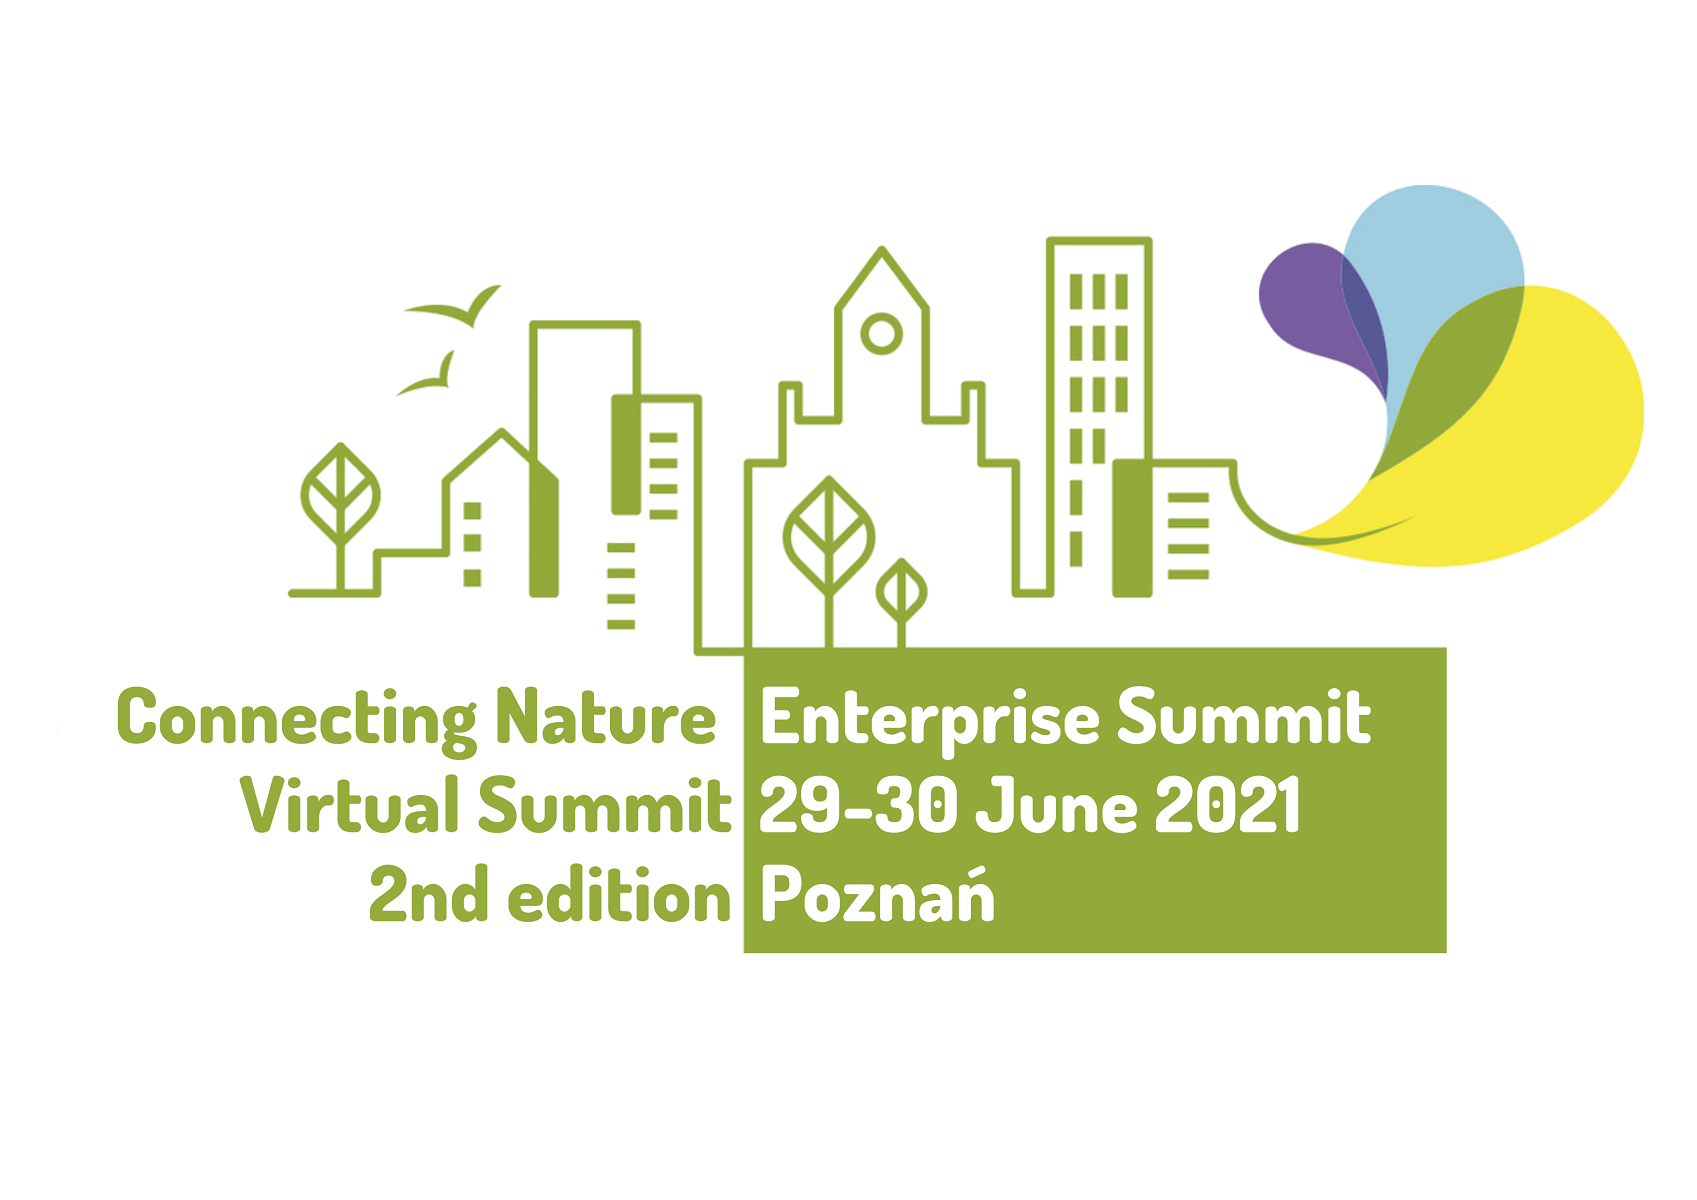 Connecting Nature Enterprise Summit to międzynarodowa konferencja organizowana przez konsorcjum europejskich miast, uczelni, organizacji i przedsiębiorców